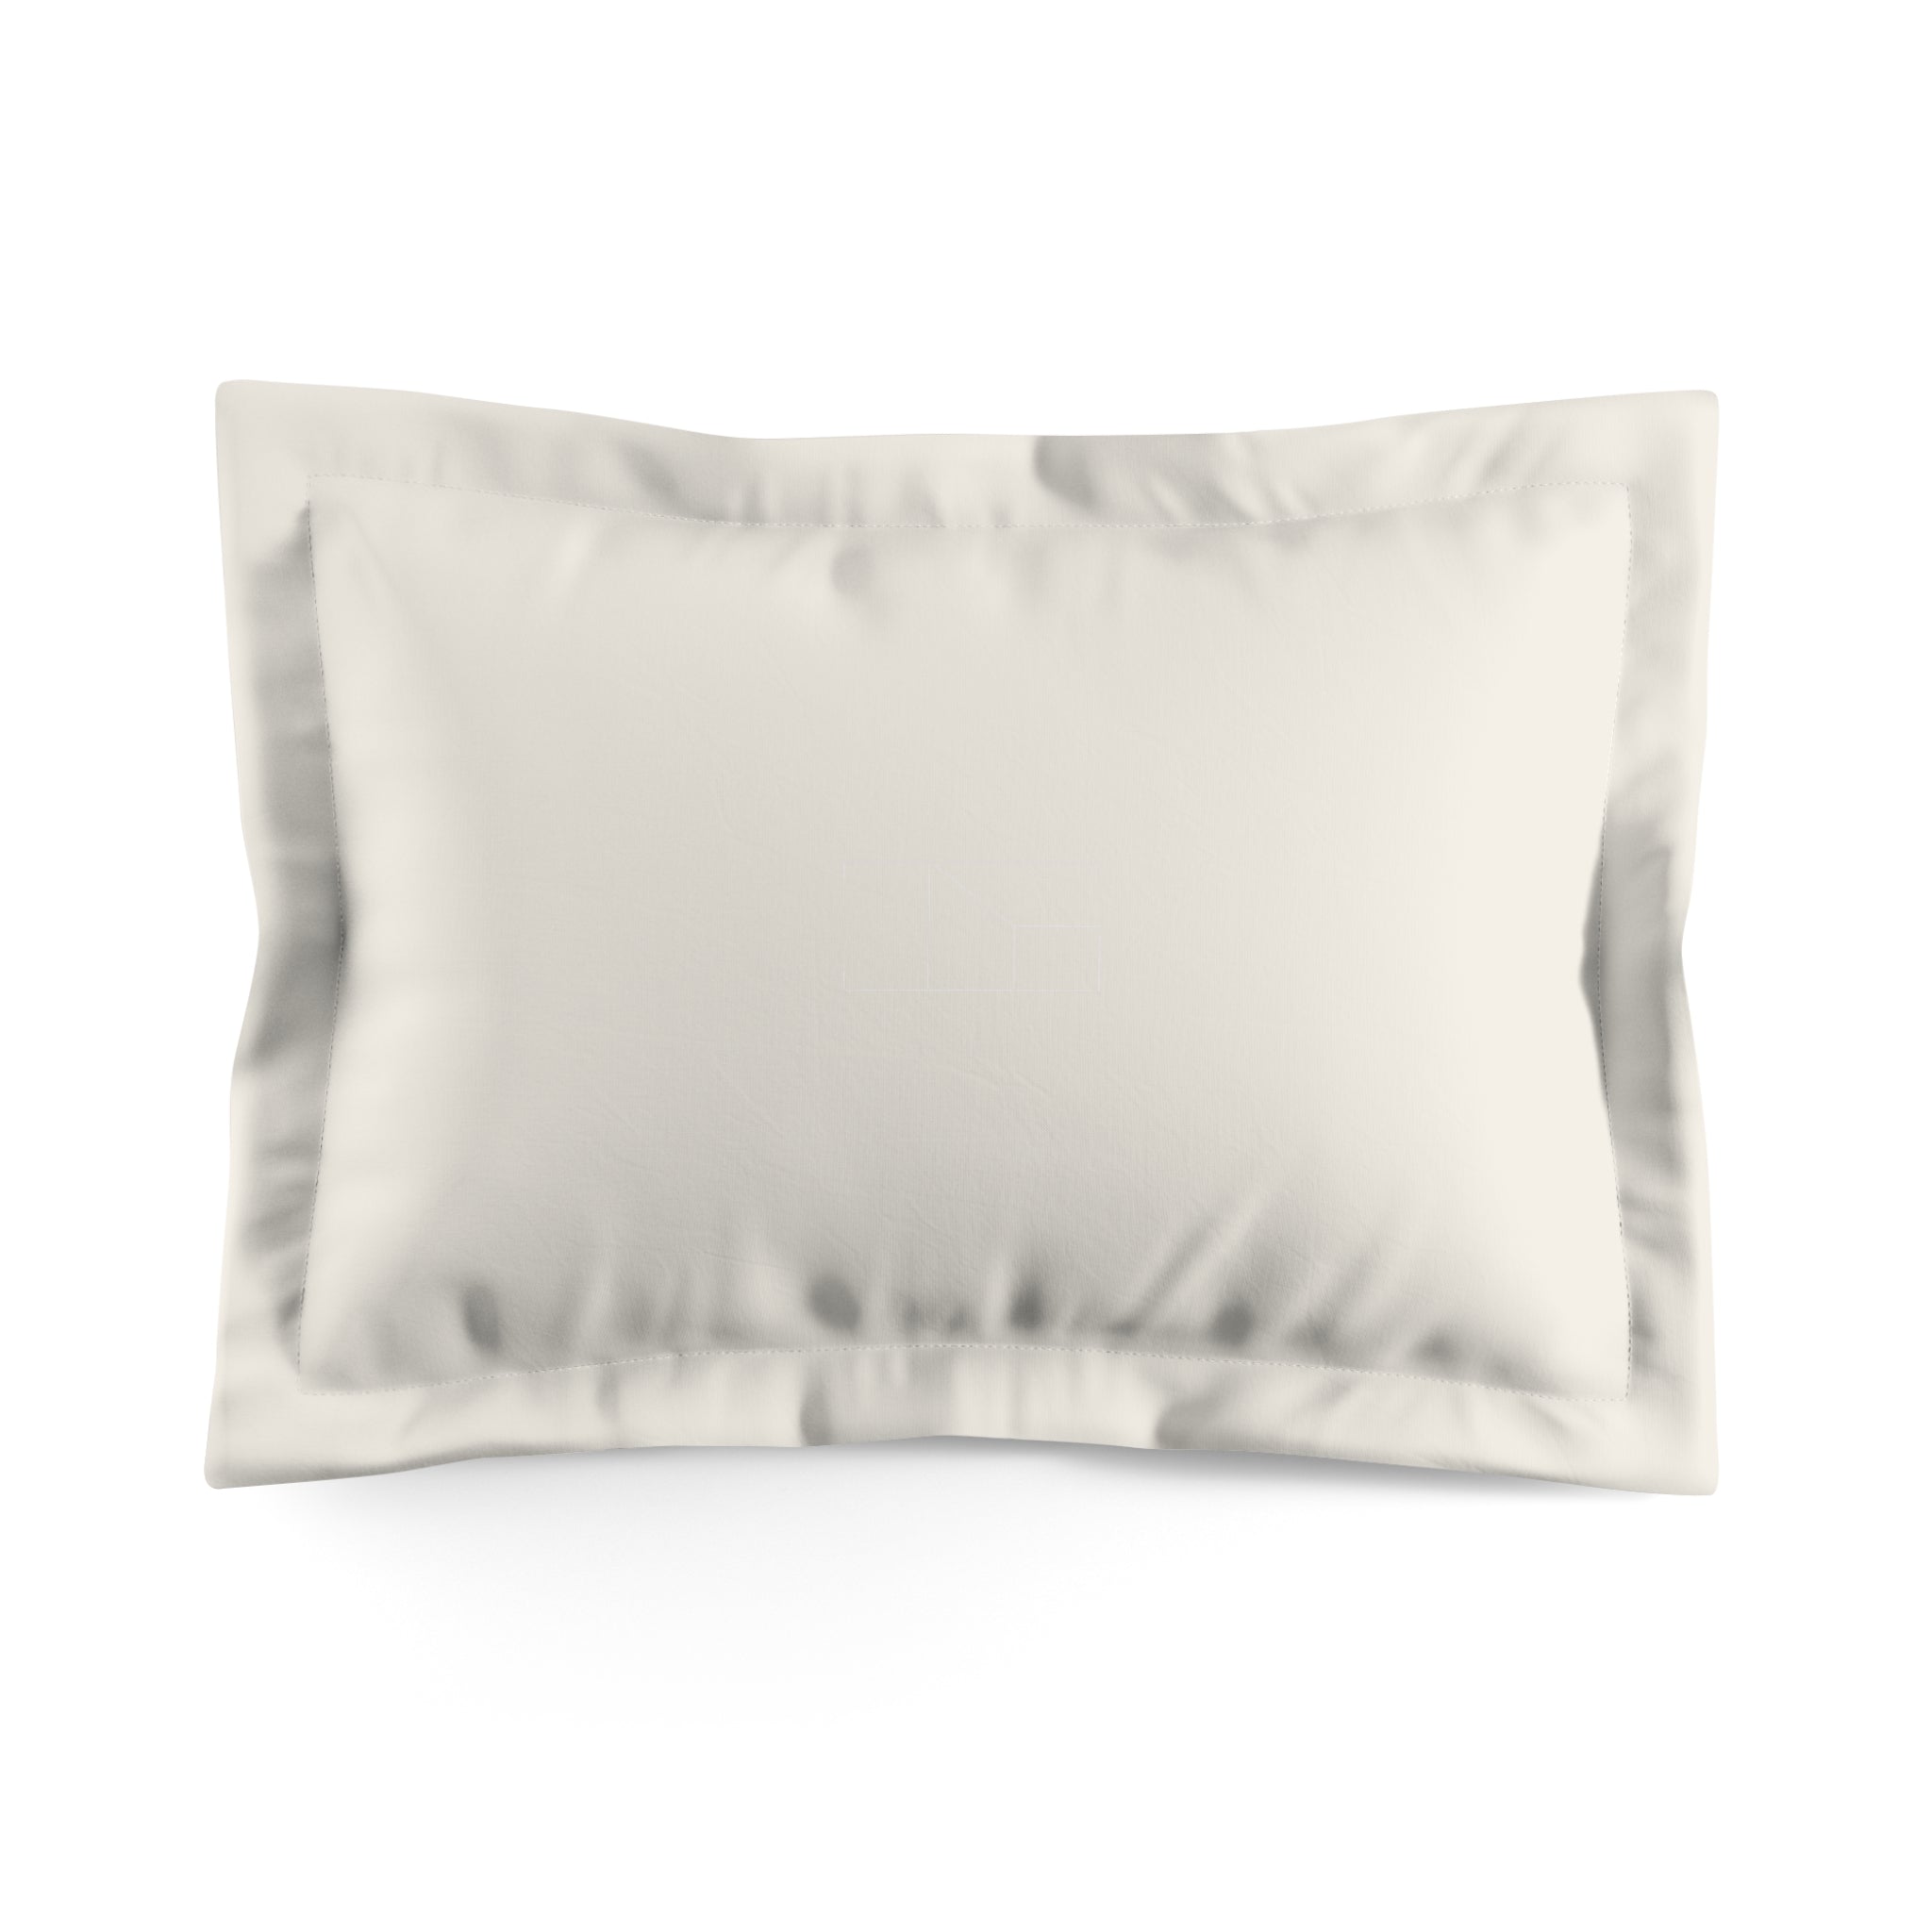 Pillow Sham - Bone White